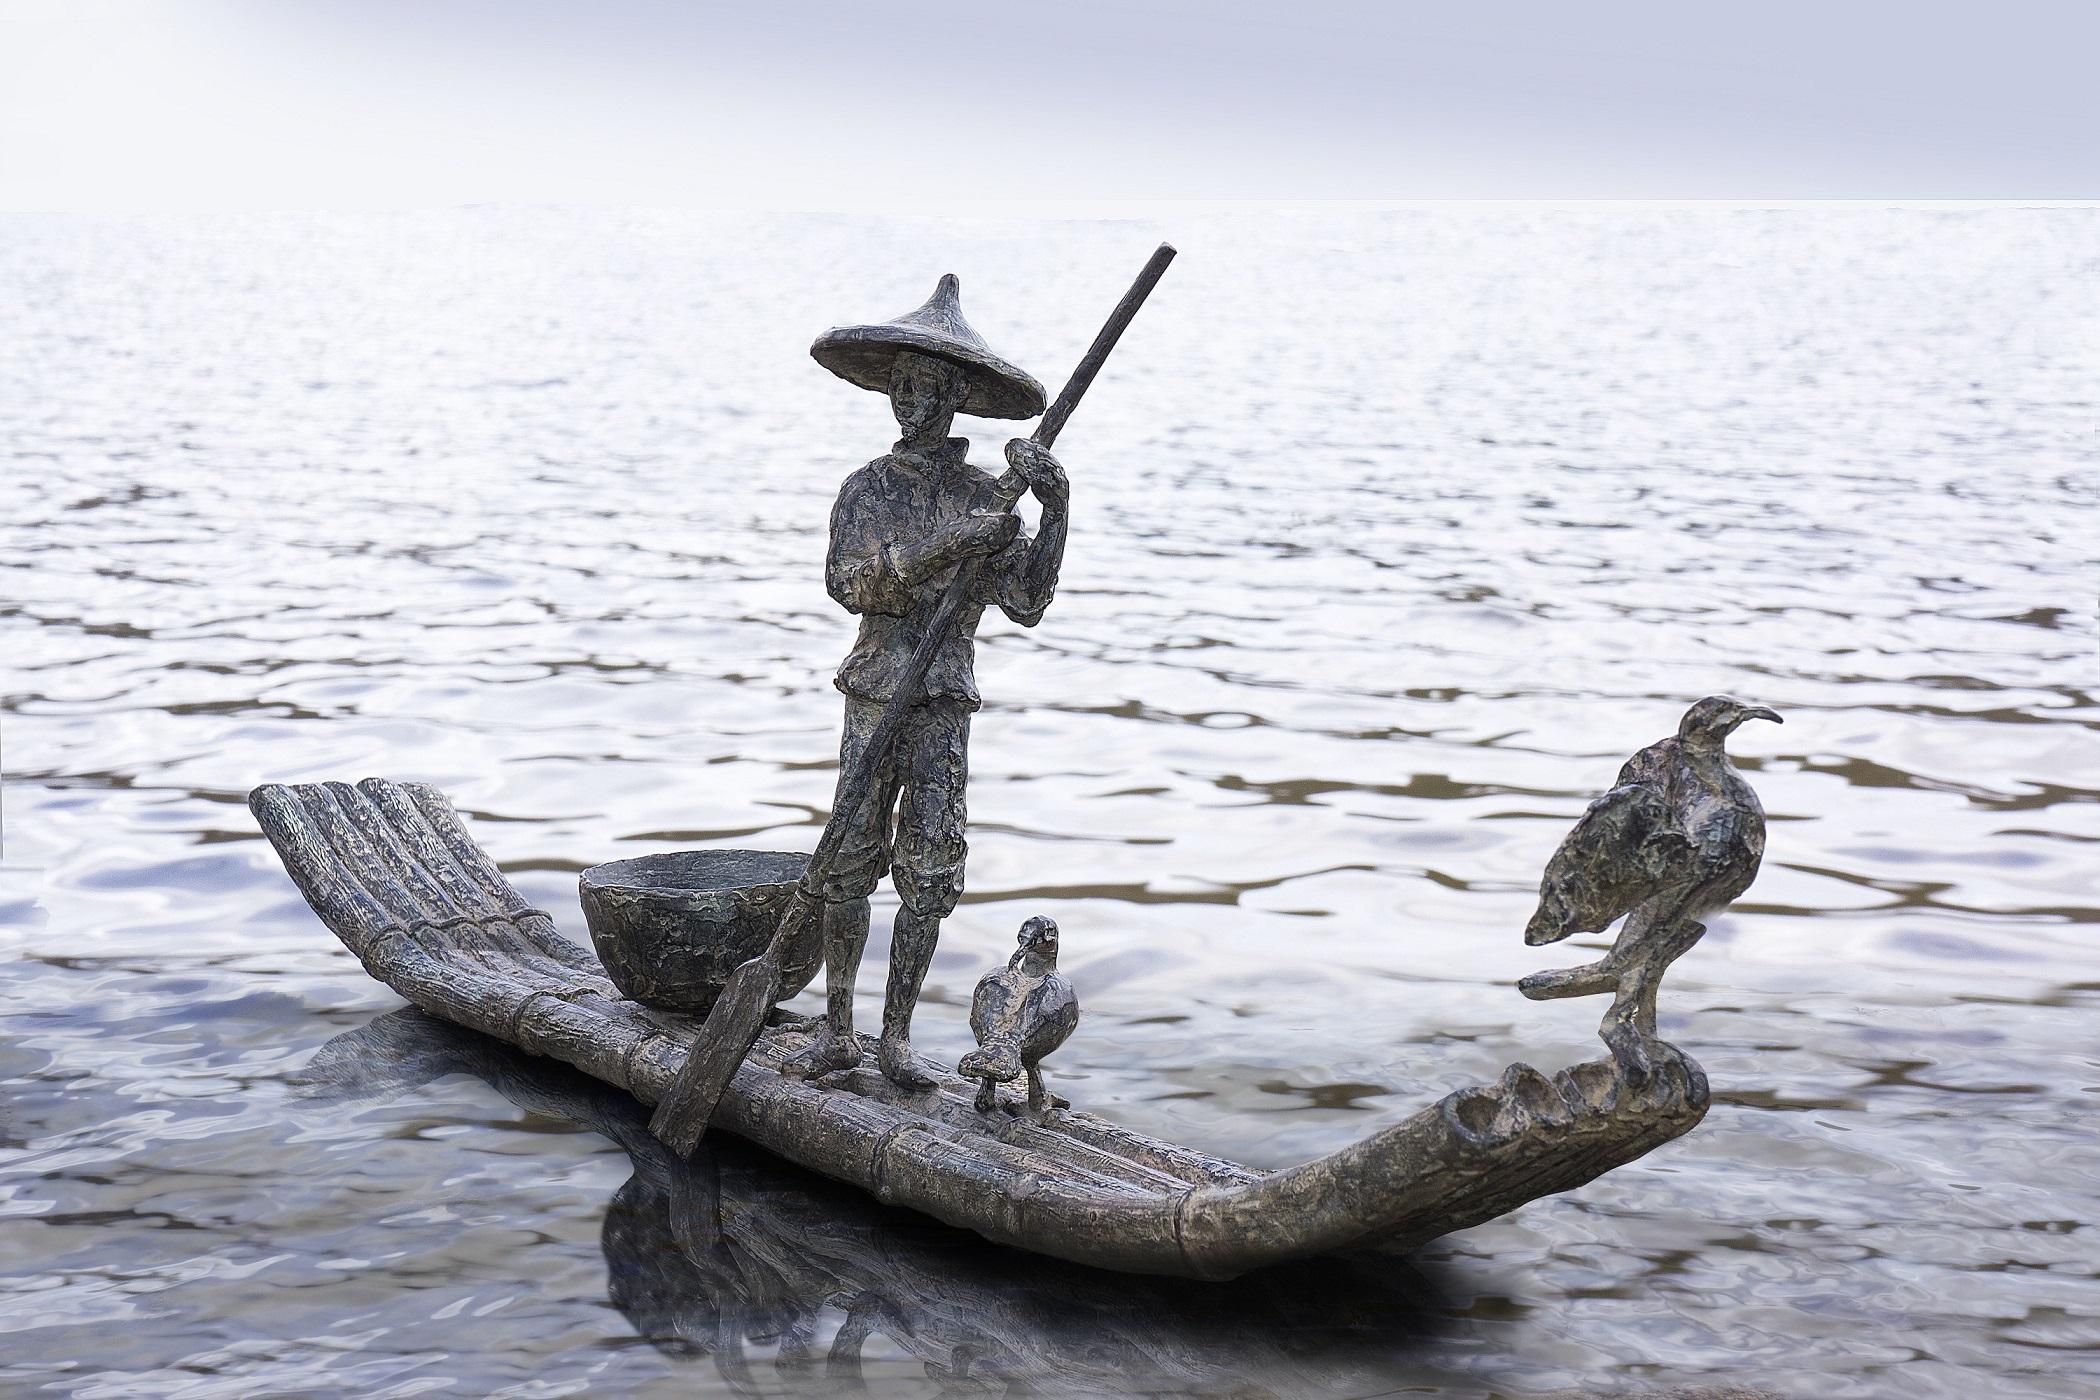 La pêche au cormoran est une sculpture en bronze de l'artiste contemporaine française Marine de Soos, dont les dimensions sont de 20 × 58 × 8 cm (7,9 × 22,8 × 3,1 in). 
La sculpture est signée et numérotée, elle fait partie d'une édition limitée à 8